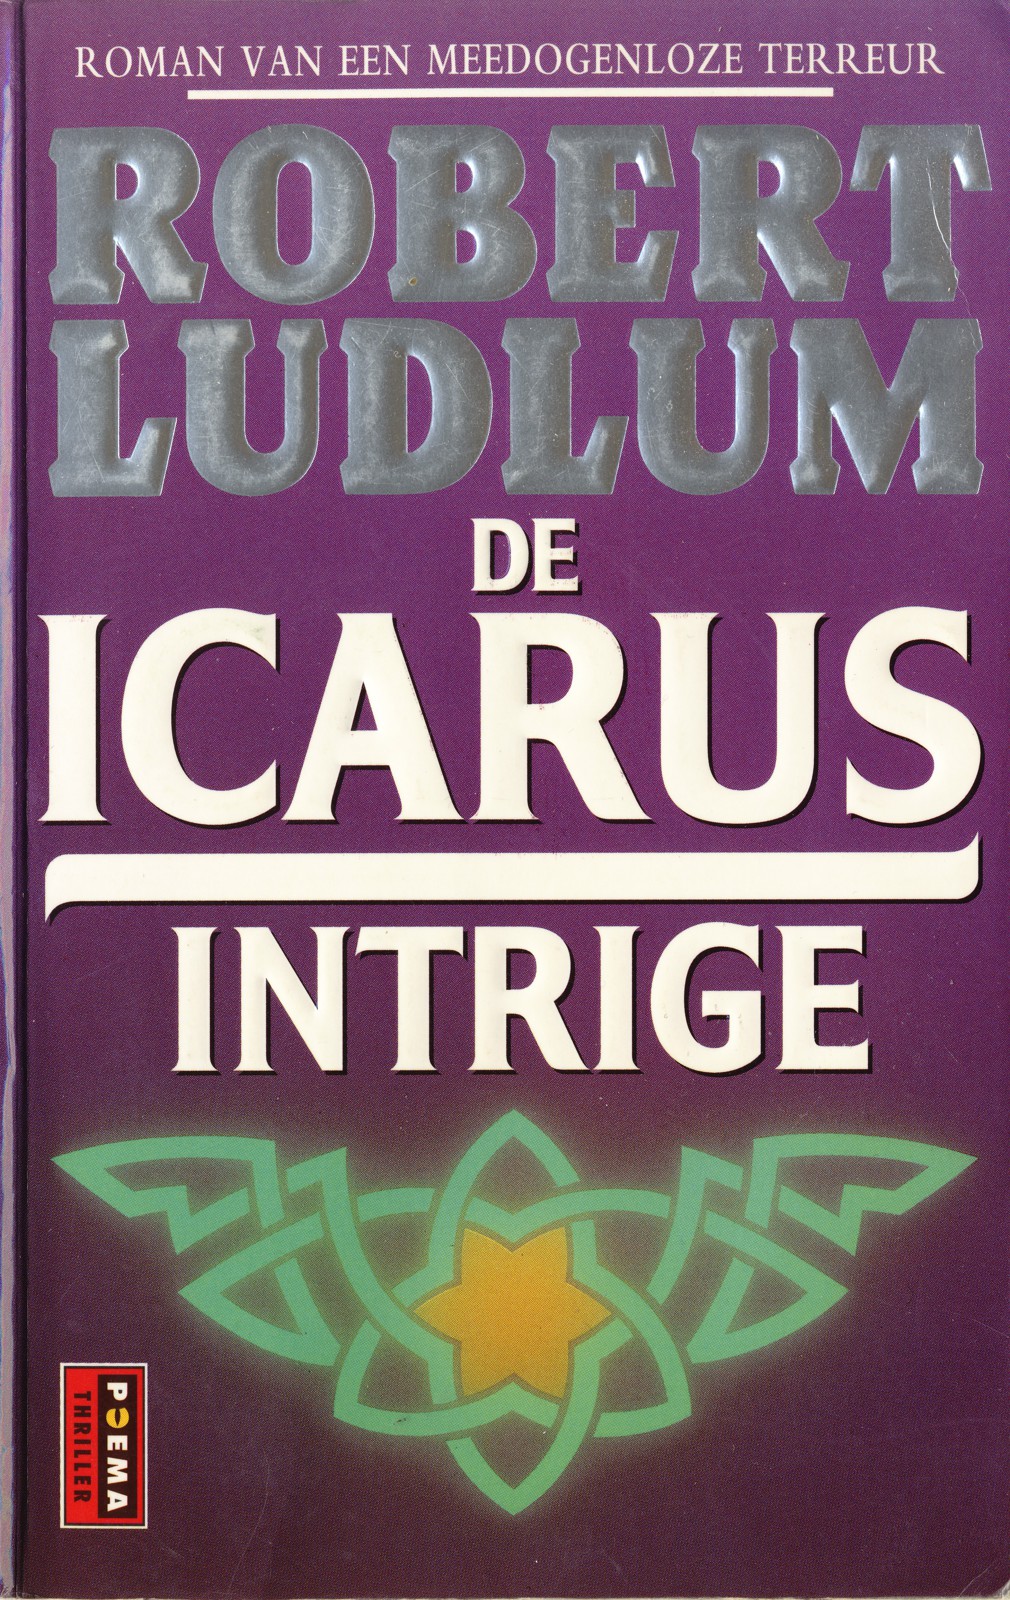 De Icarus intrige